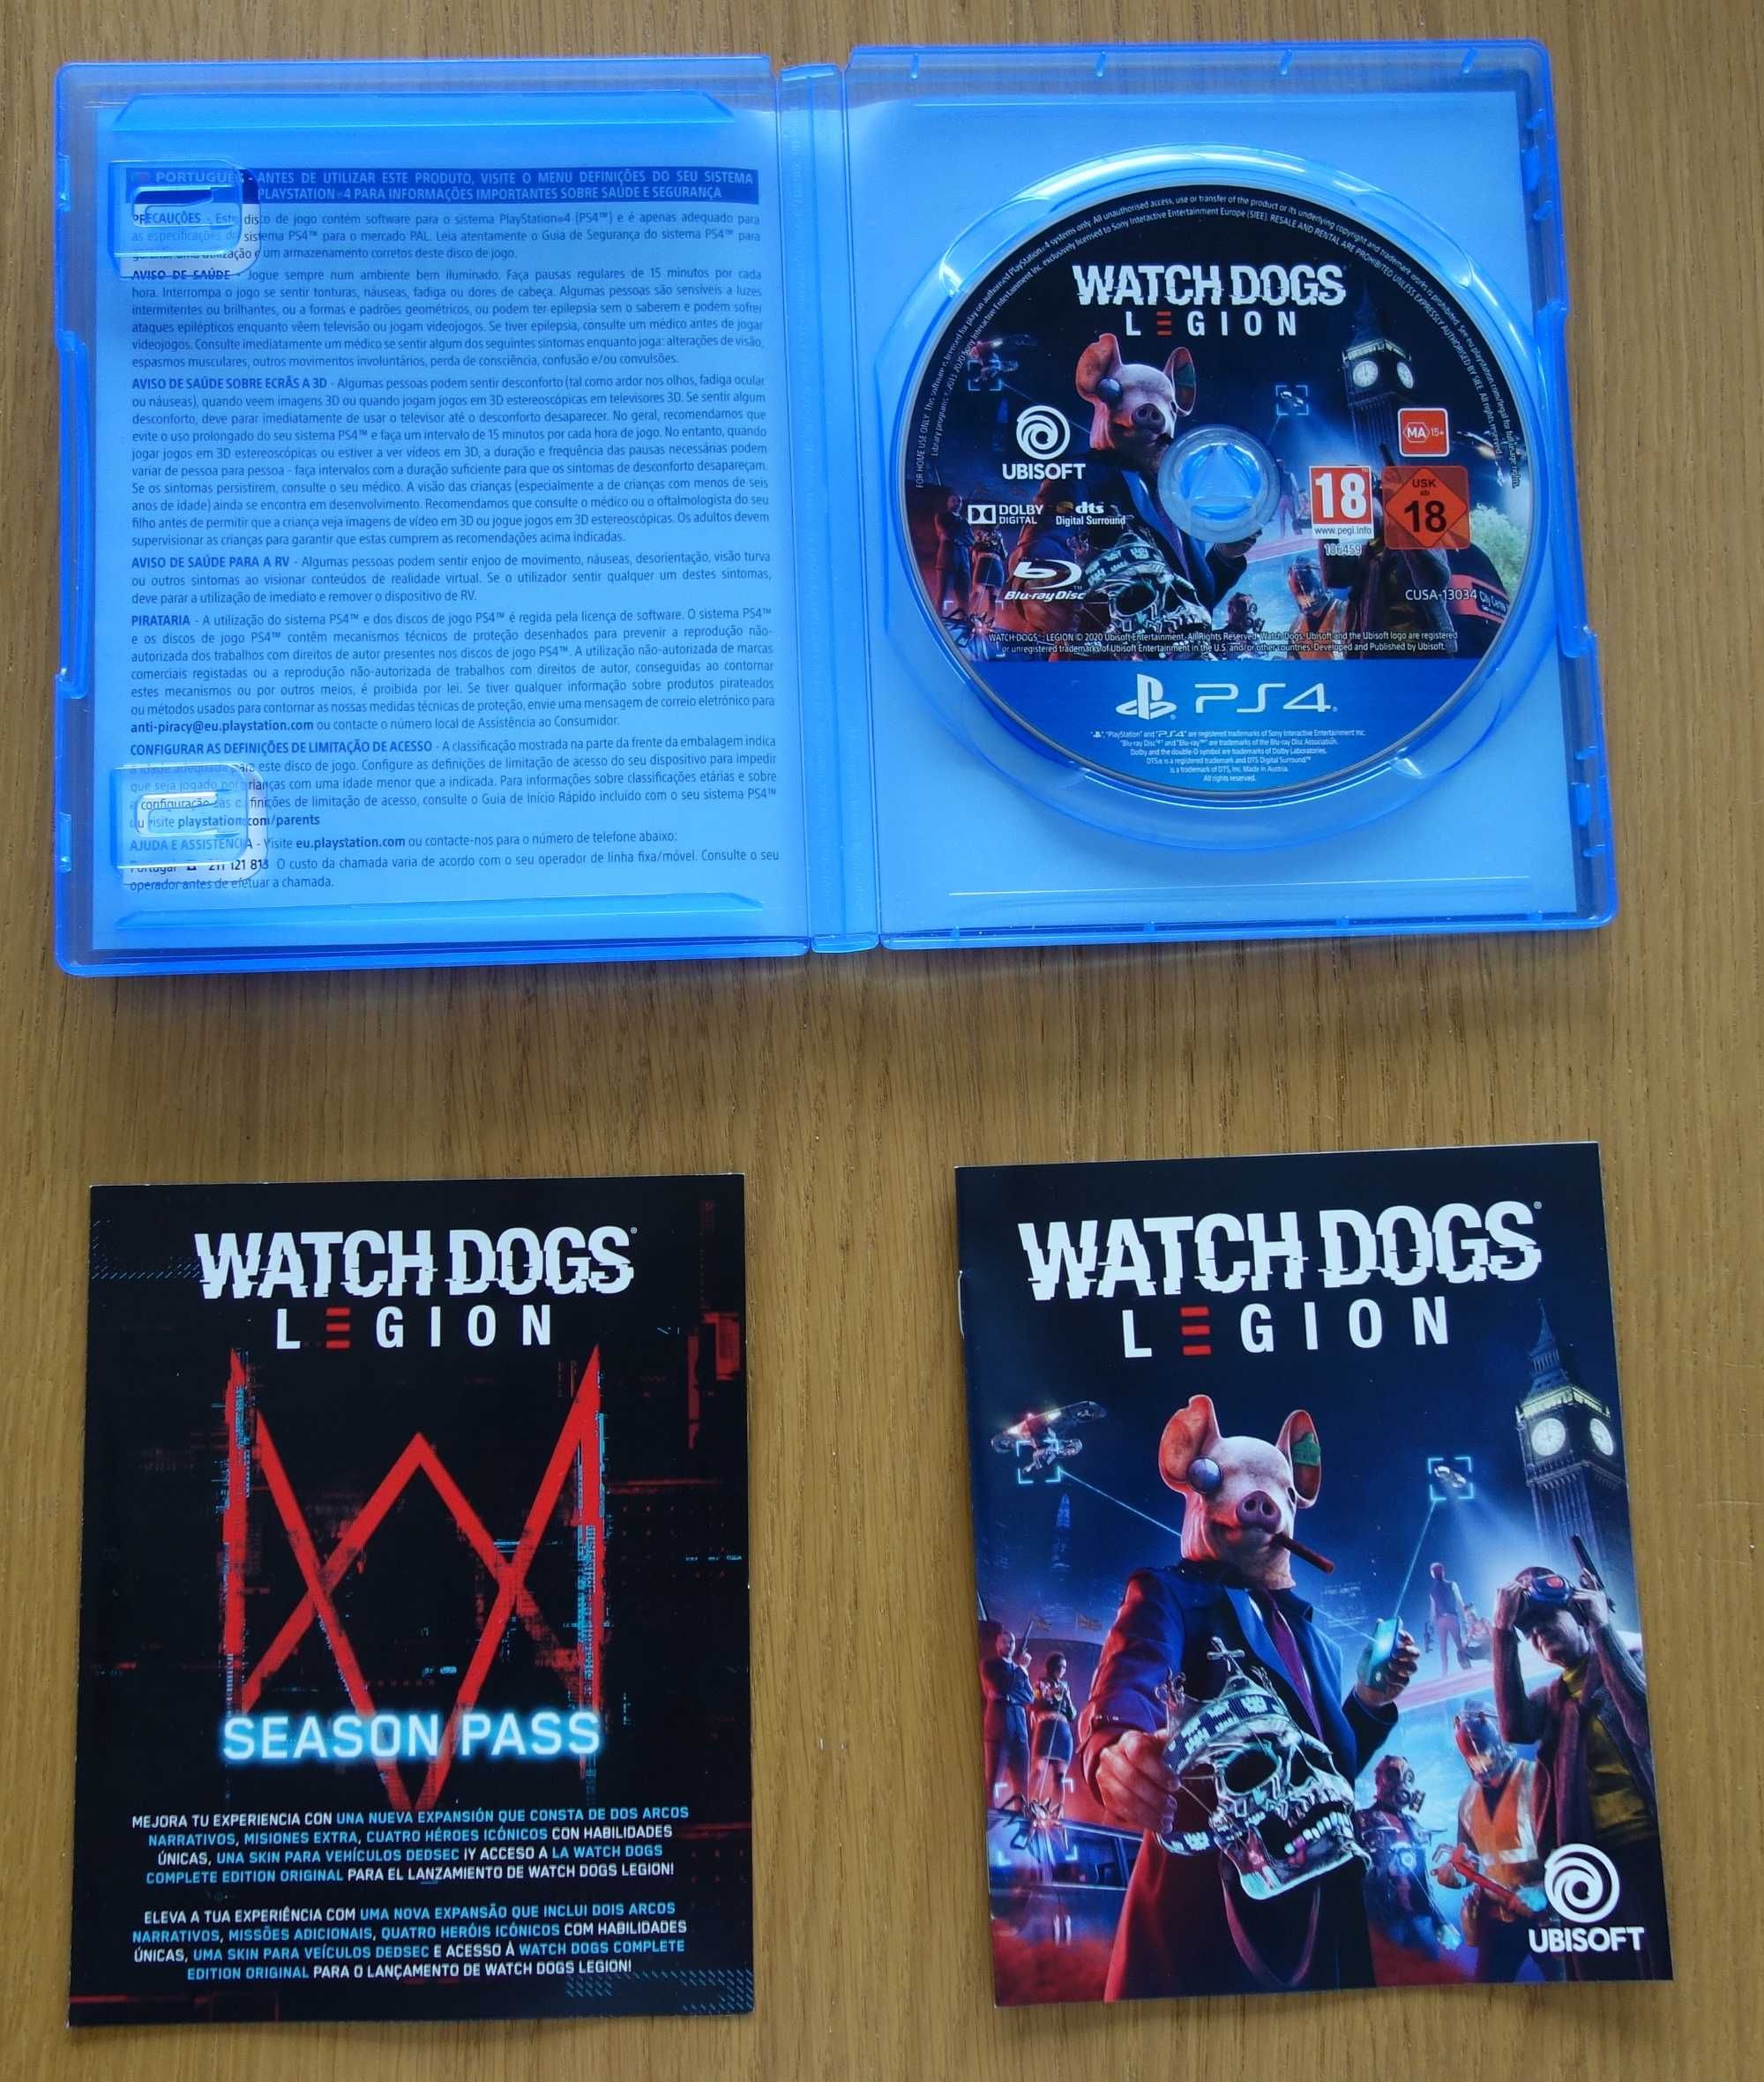 Watch dogs Legion PS4